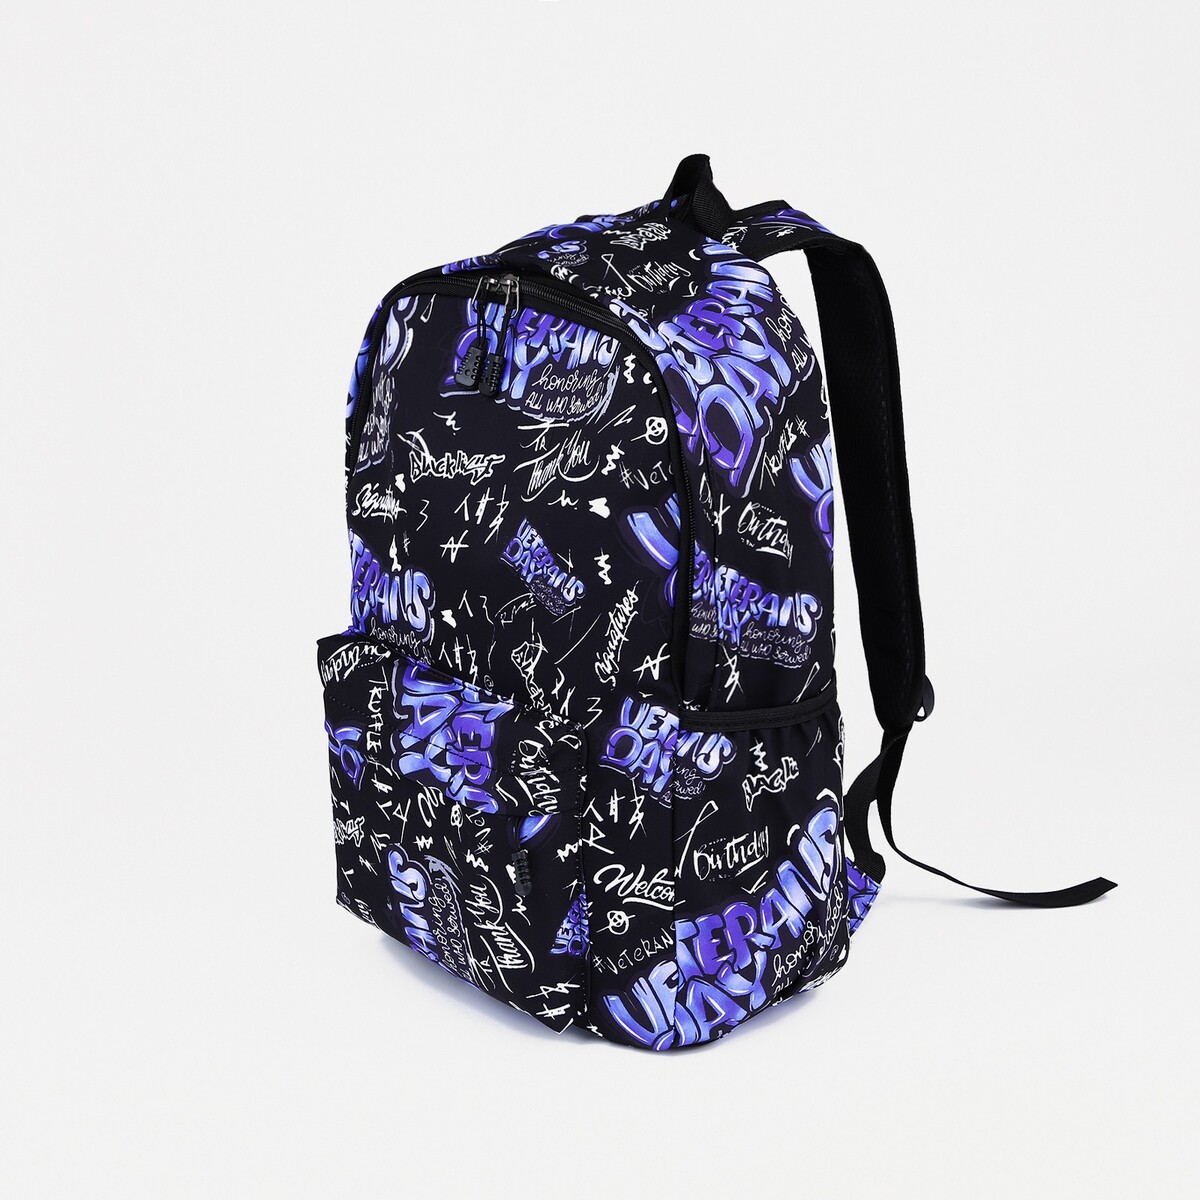 Рюкзак на молнии, 3 наружных кармана, цвет фиолетовый/черный